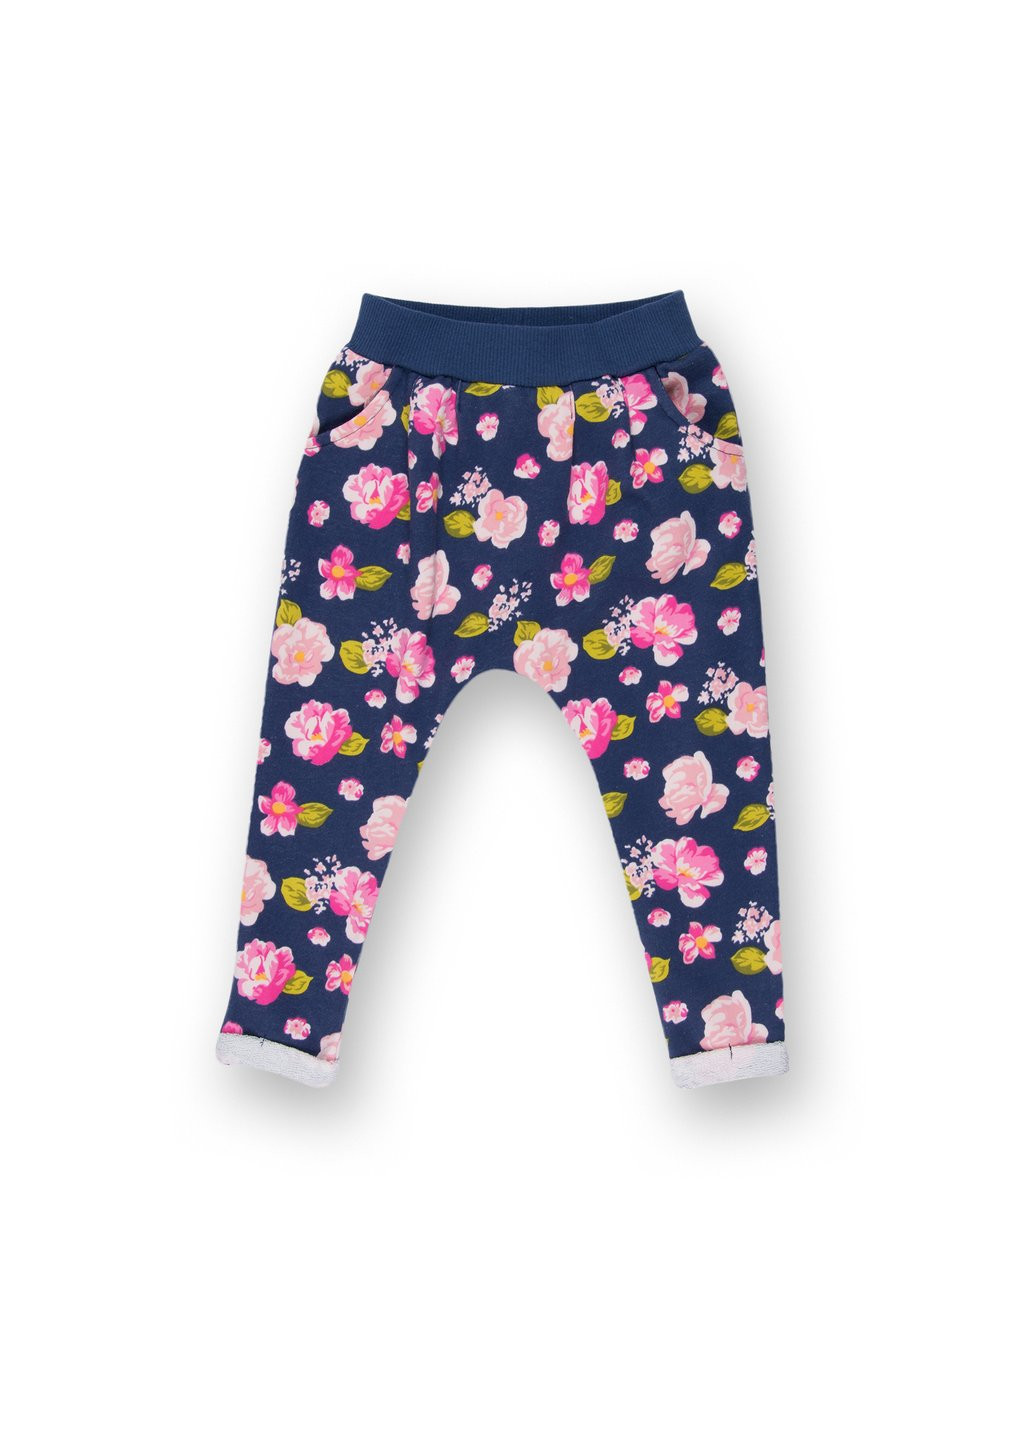 Комбинированный демисезонный набор детской одежды с девочкой и штанишками в цветочек (8075-92/g-pink) Breeze